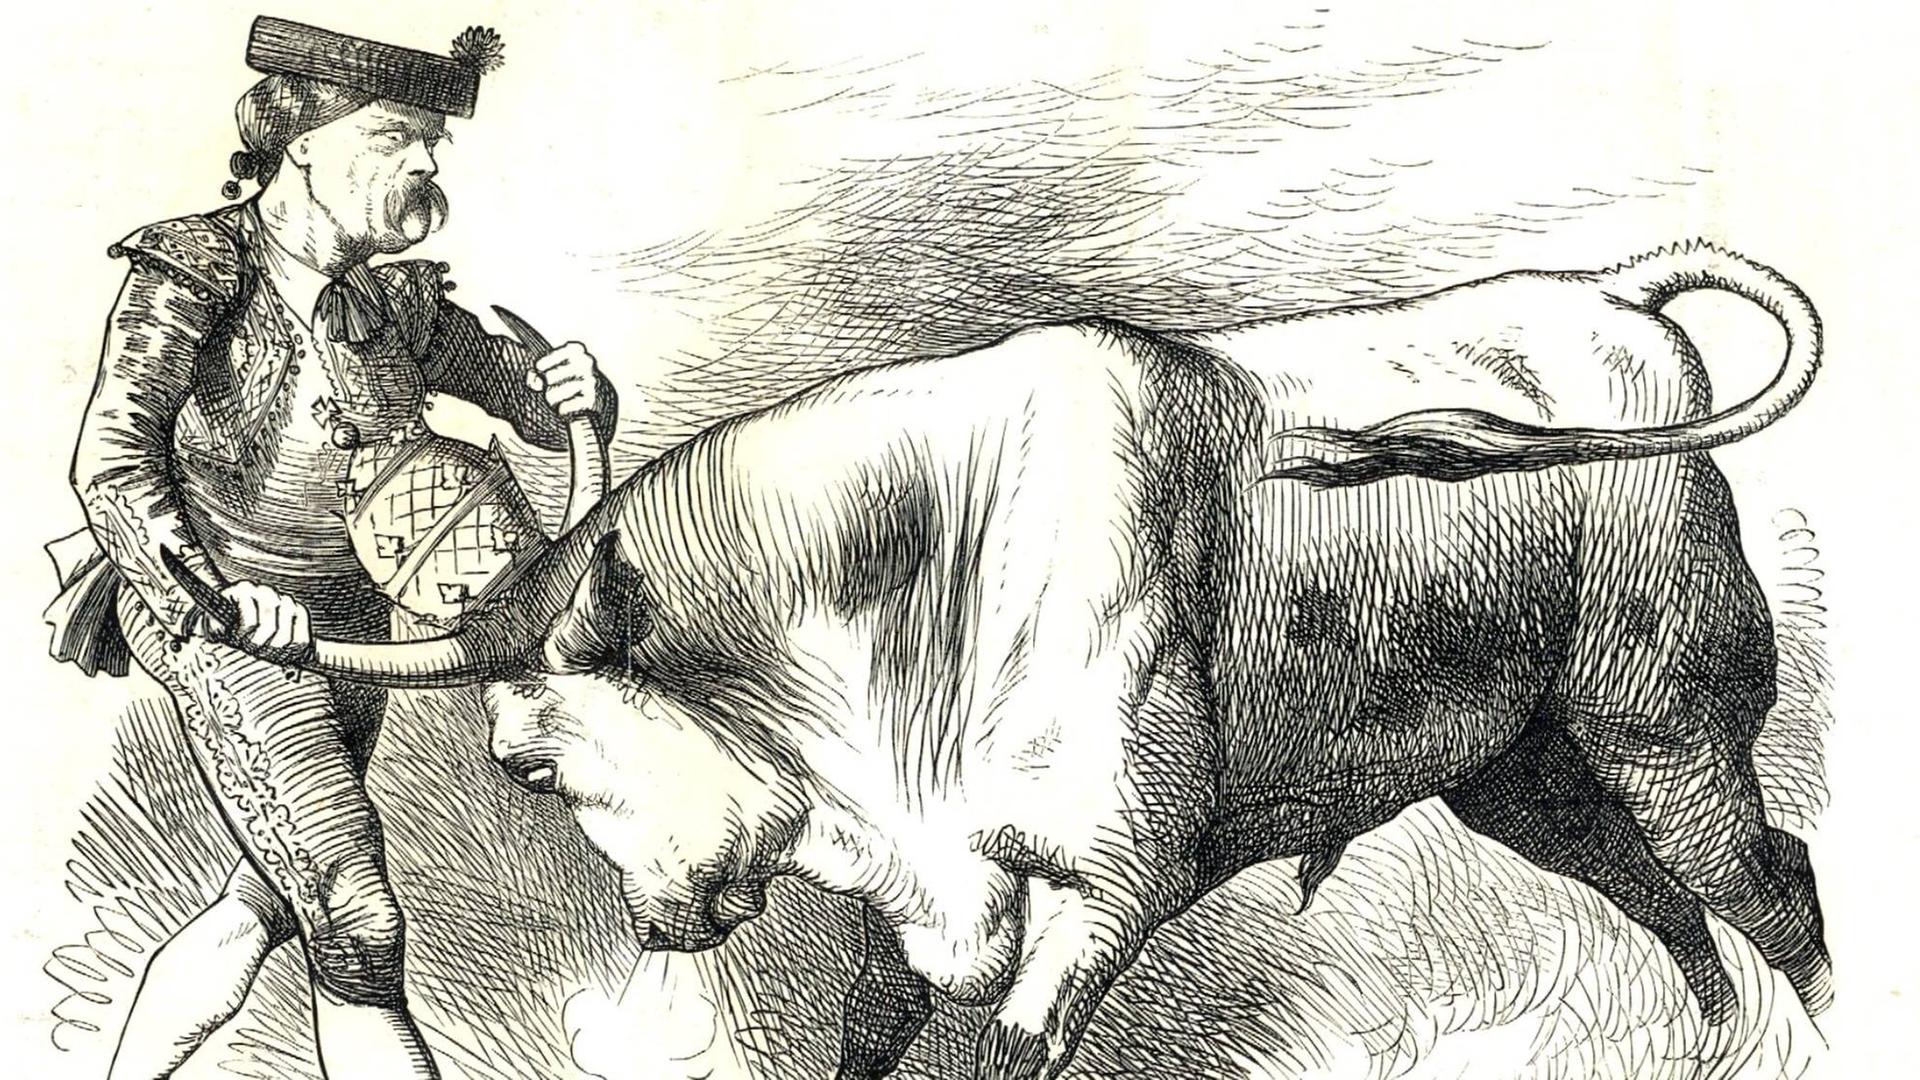 Eine Karikatur zeigt Otto von Bismarck als spanischen Stierkämpfer in einer Auseinandersetzung mit einem Stier, auf dessen Kopf eine Bischofsmütze sitzt.